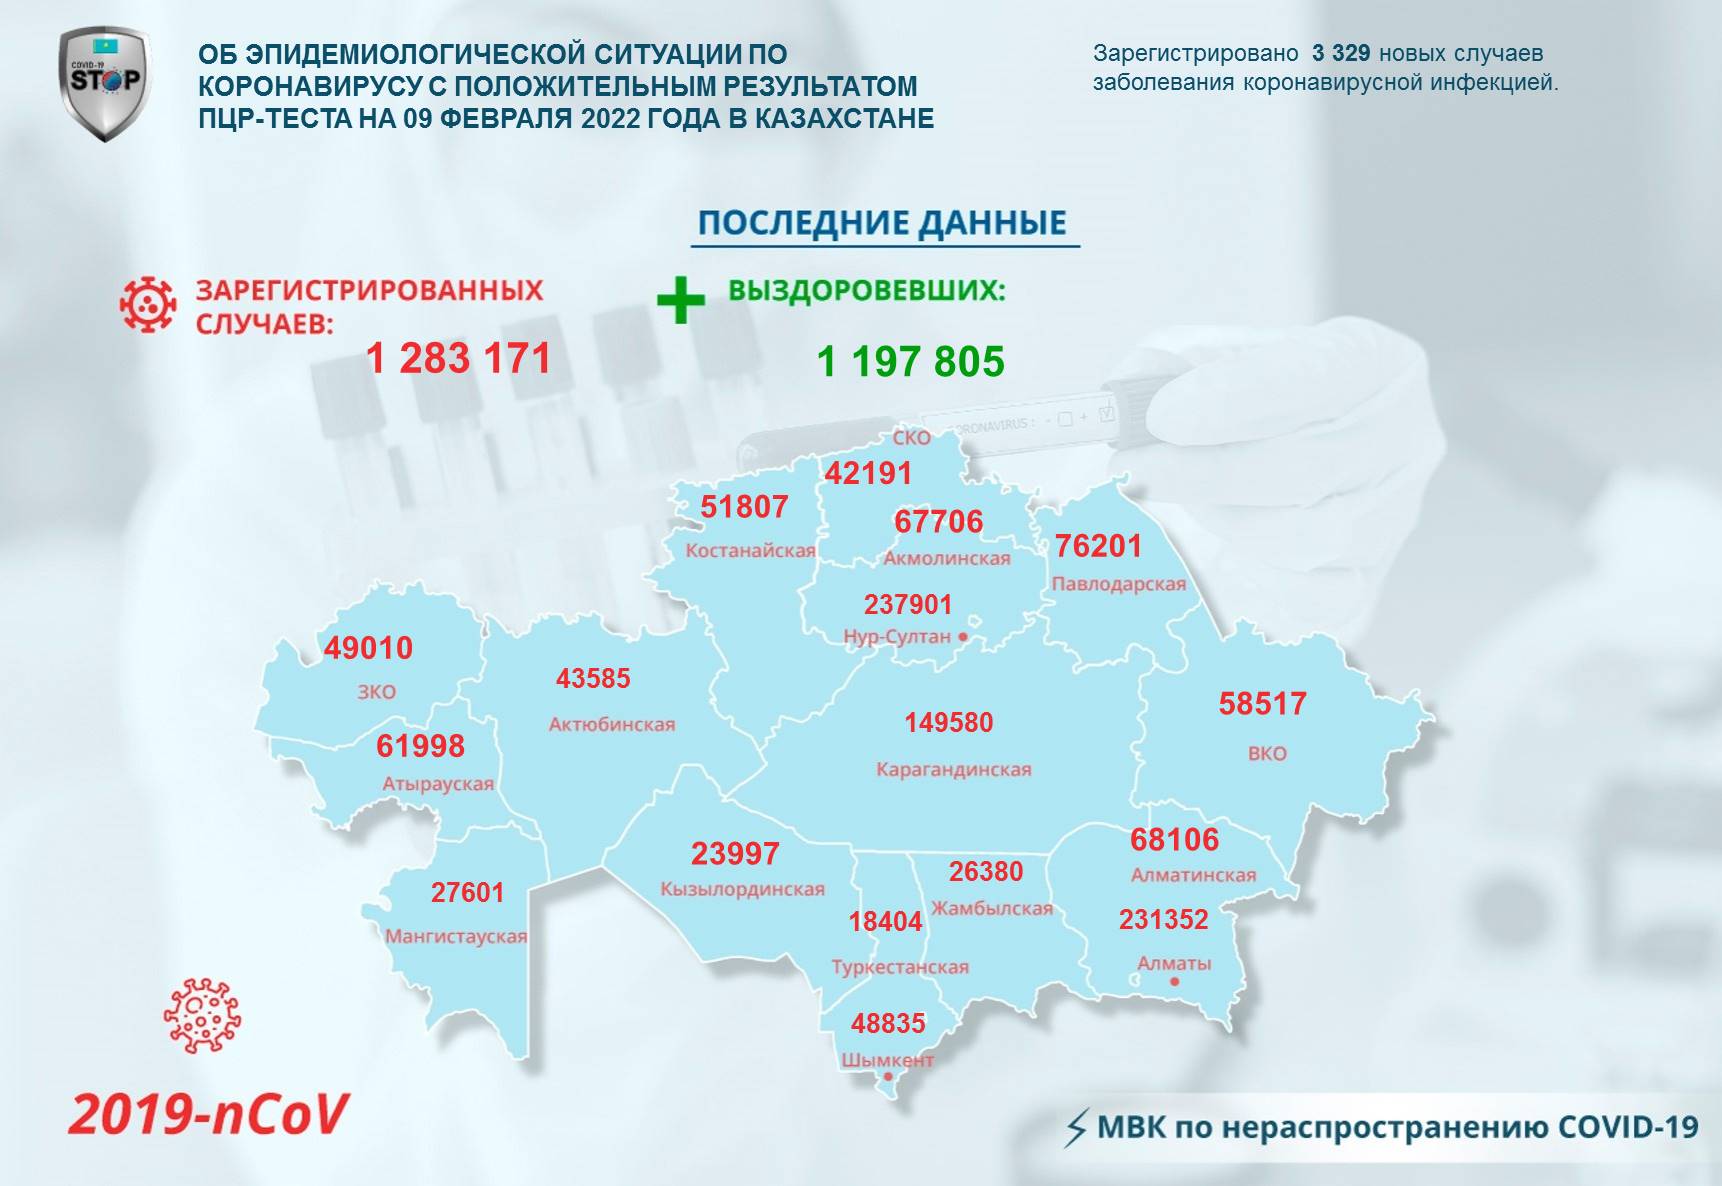 Об эпидемиологической ситуации по коронавирусу с положительным результатом ПЦР-теста на 09 февраля 2022  года в Казахстане